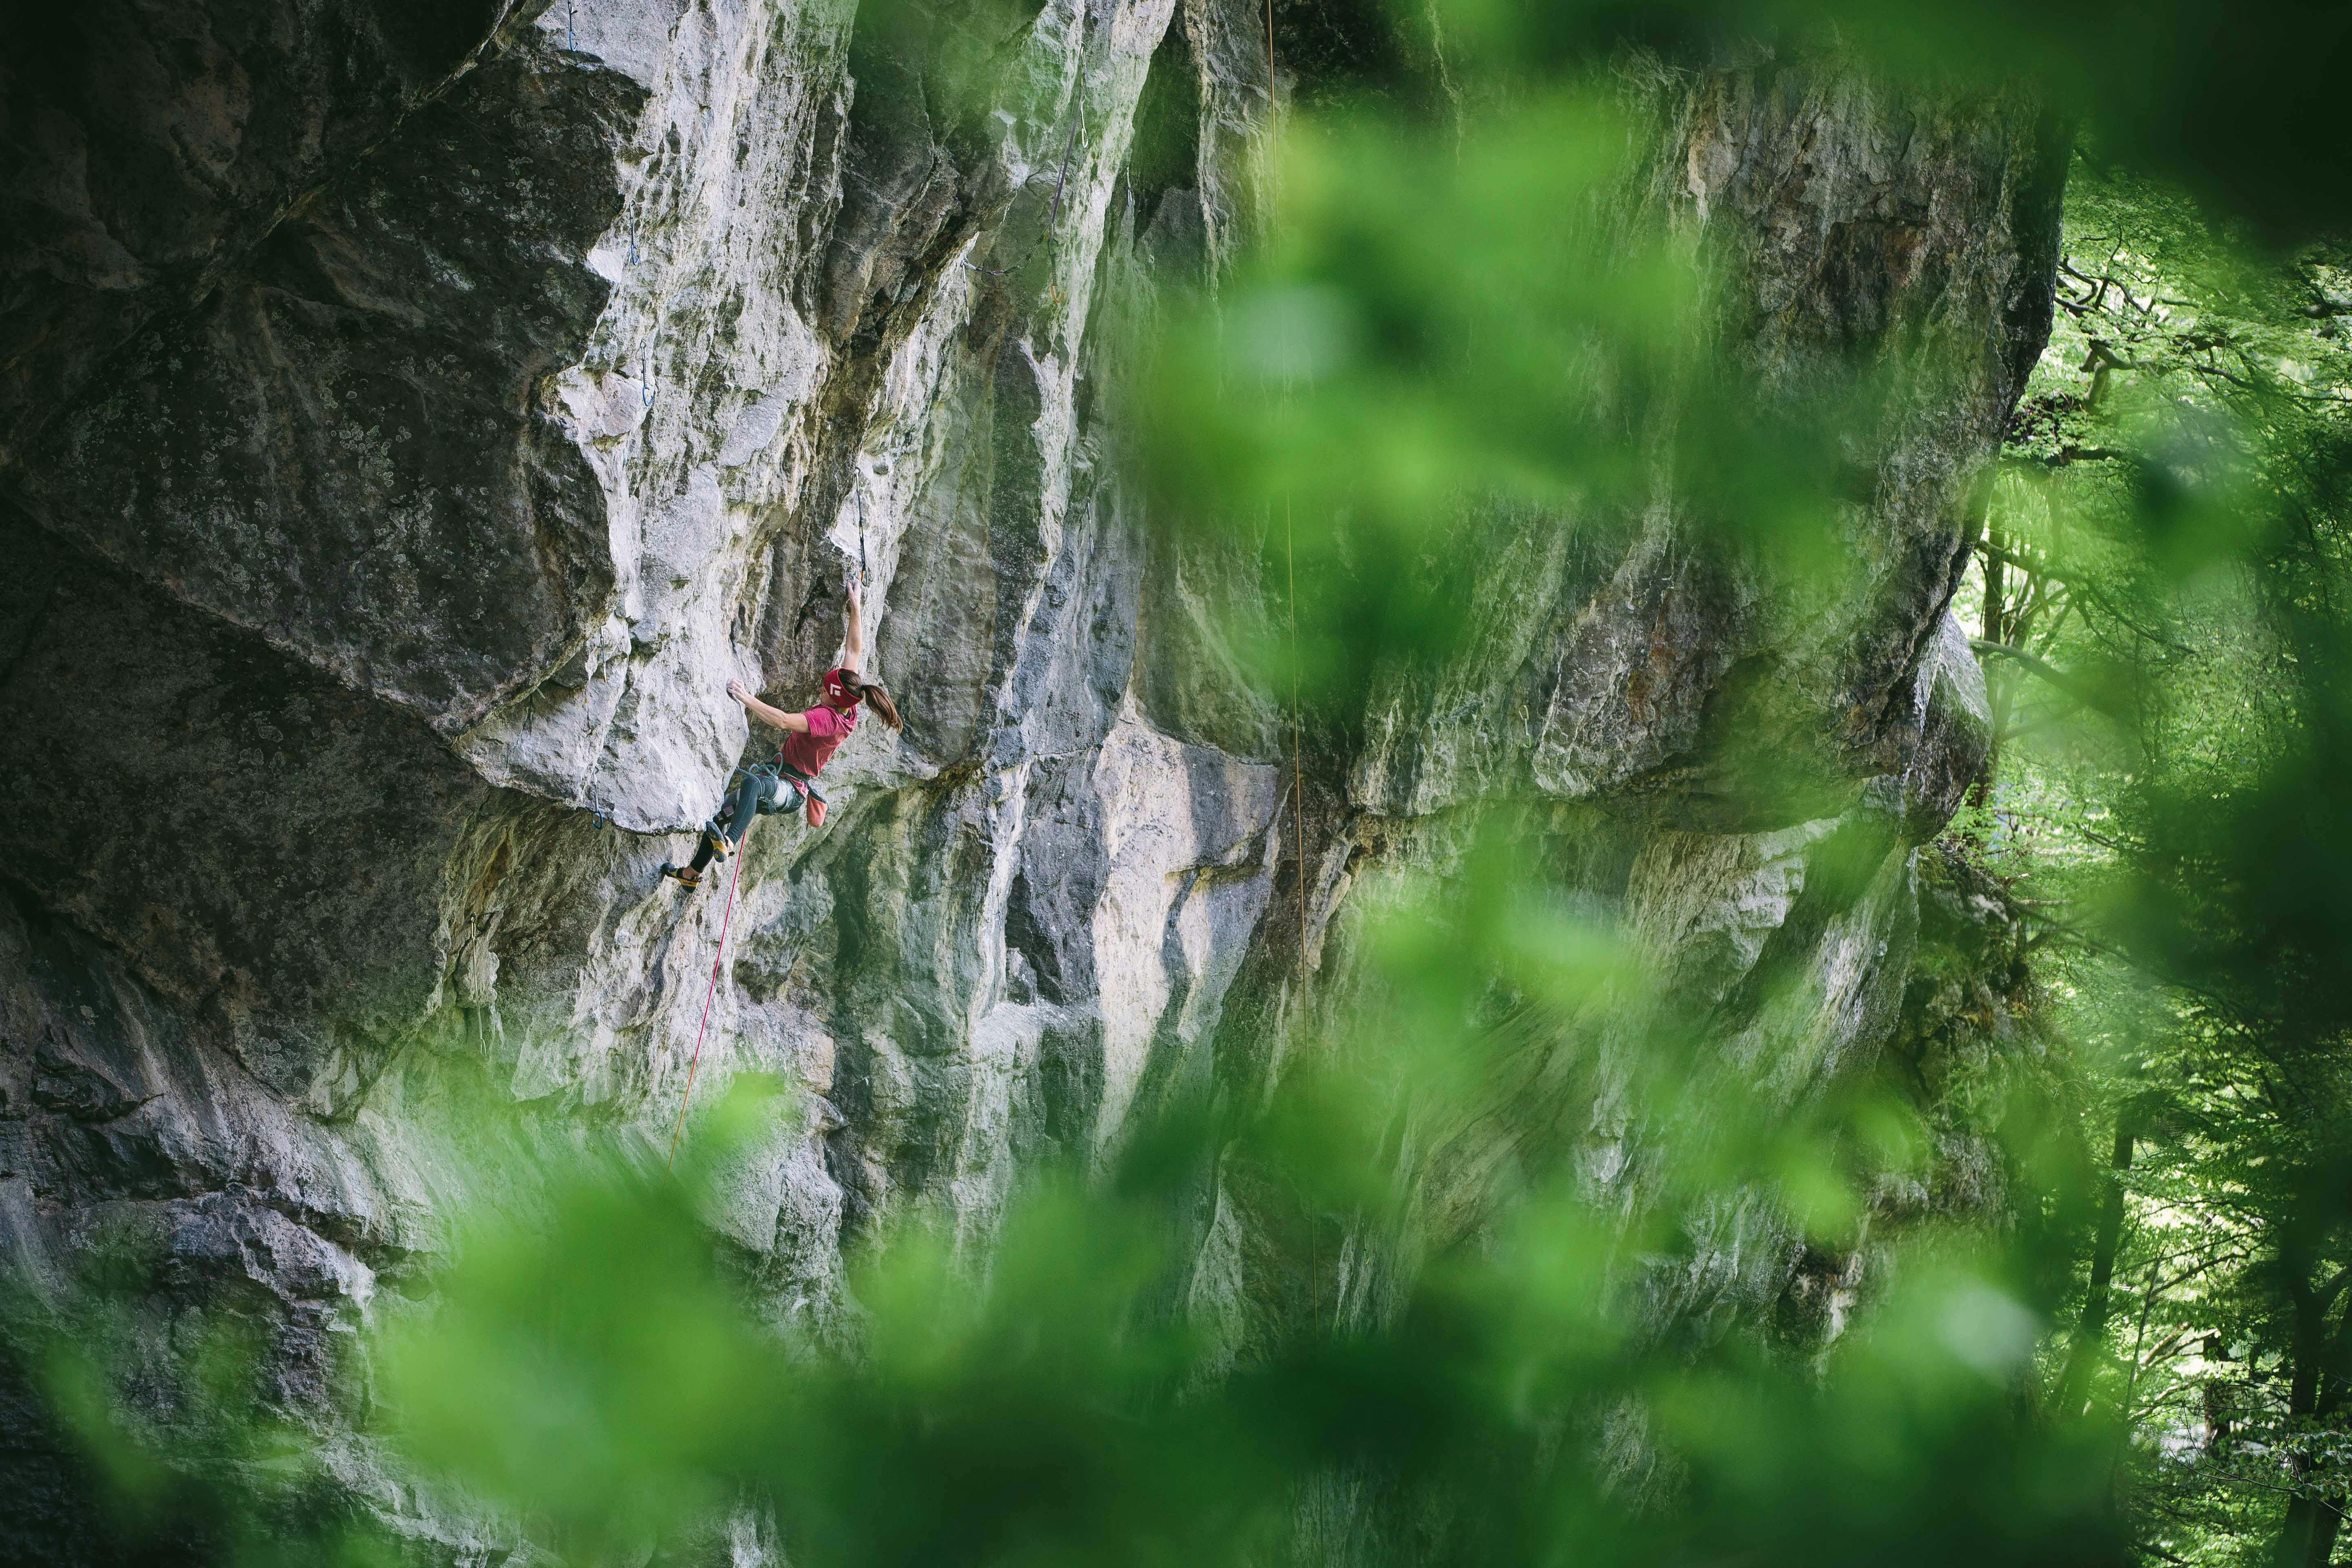 Babsi Zangerl sport climbing outdoors